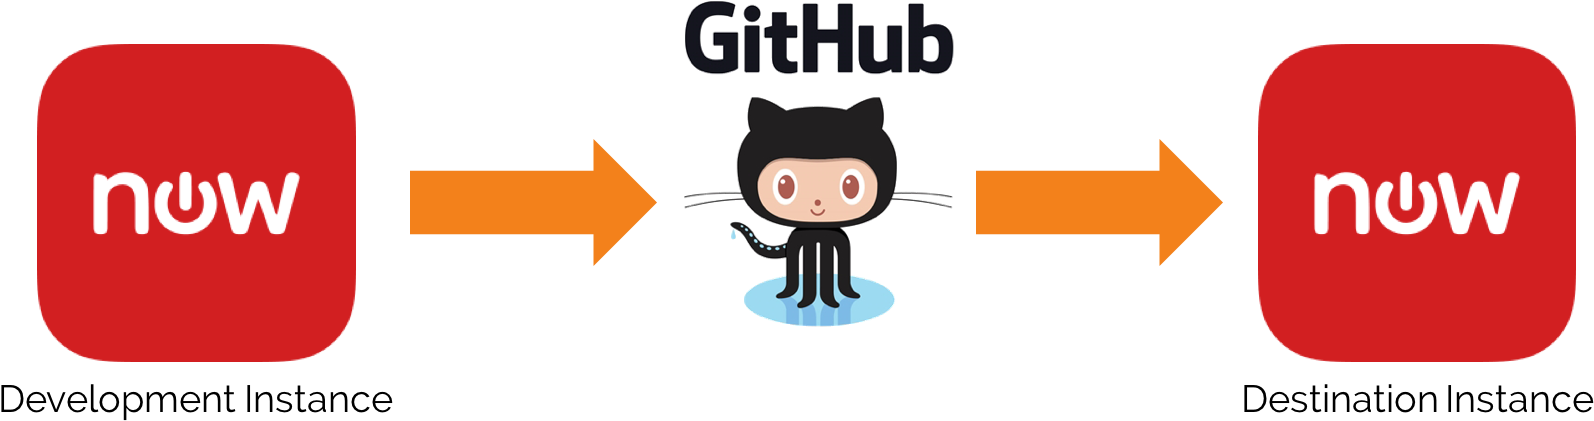 Git Hub Deployment Workflow Illustration PNG image